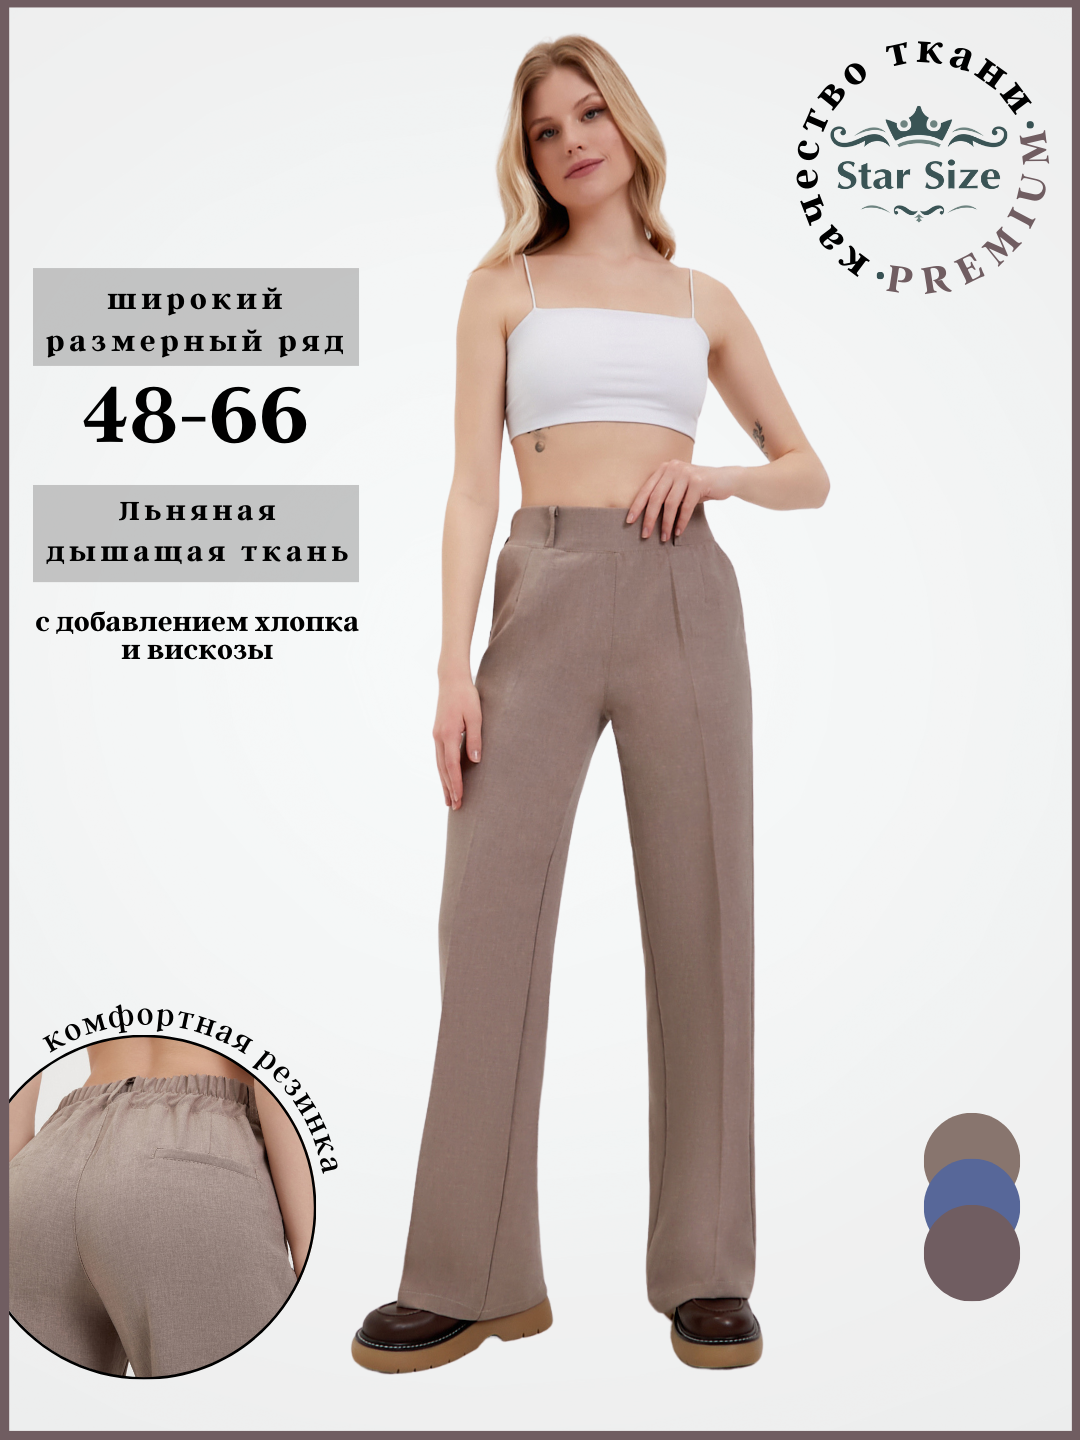 Брюки классические Star Size брюки летние женские больших размеров, размер 66, бежевый